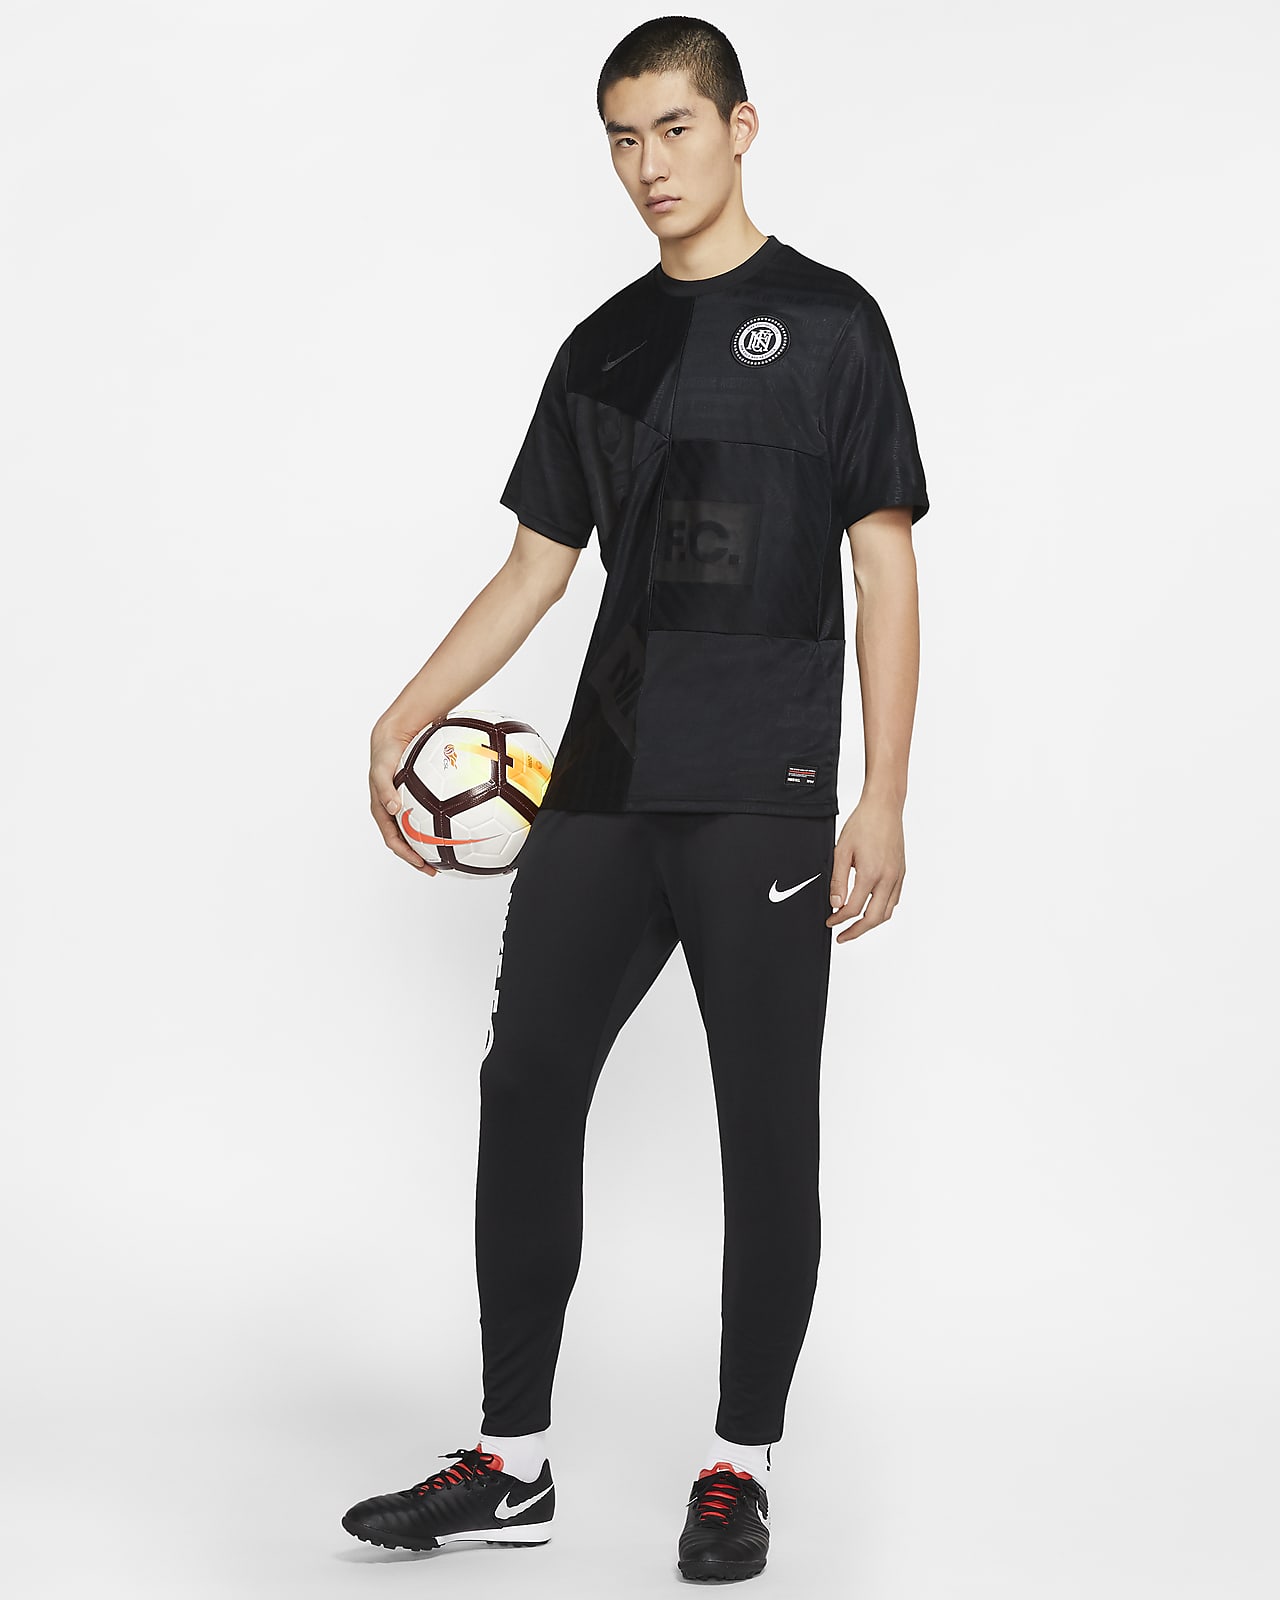 Nike公式 ナイキ F C エッセンシャル メンズ ニット サッカーパンツ オンラインストア 通販サイト